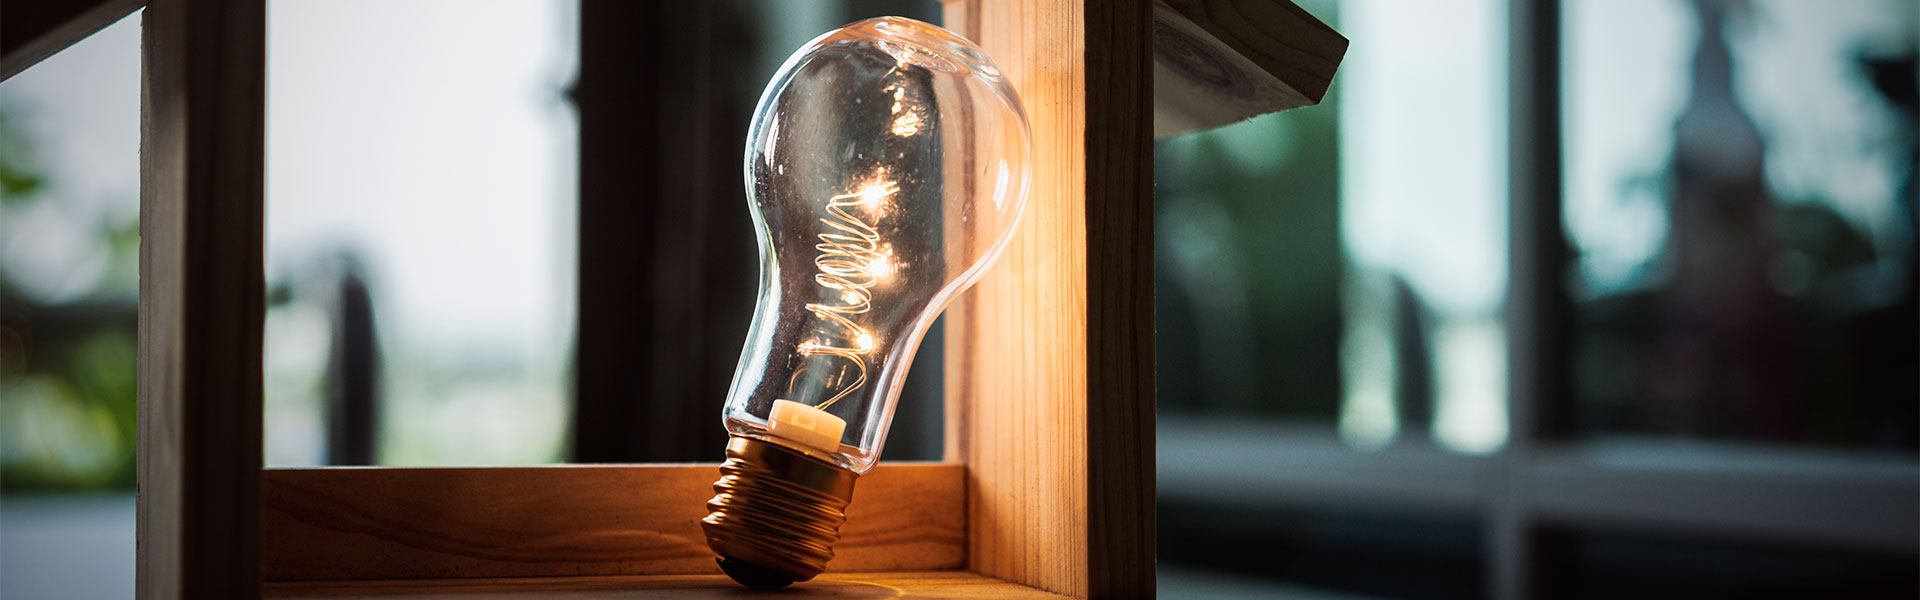 Cómo leer un contador de luz y conseguir ahorro energético